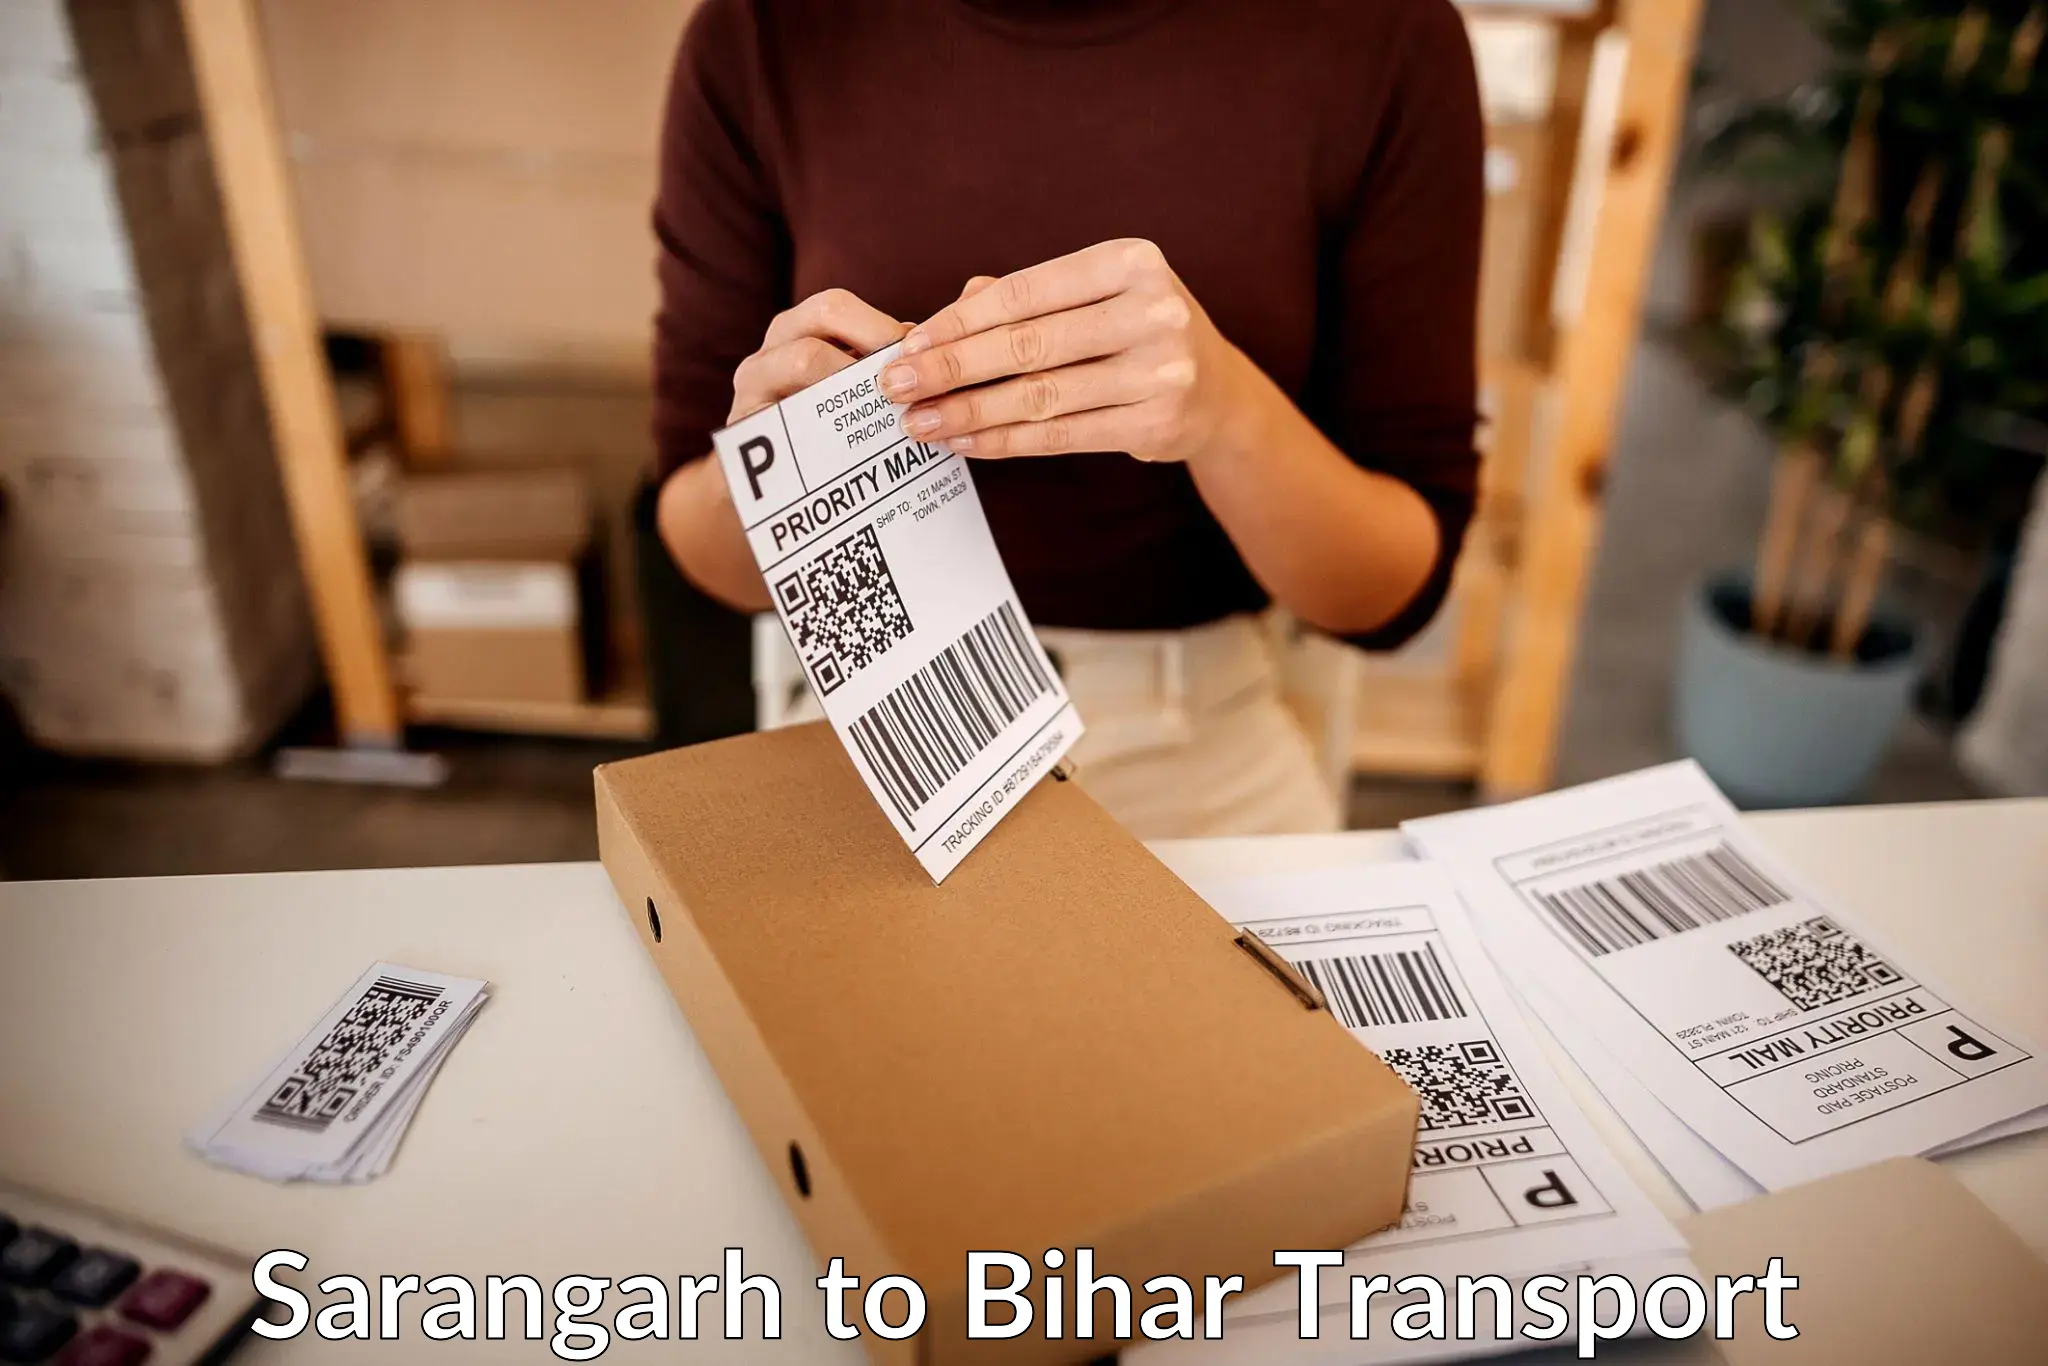 Transport in sharing Sarangarh to Buxar